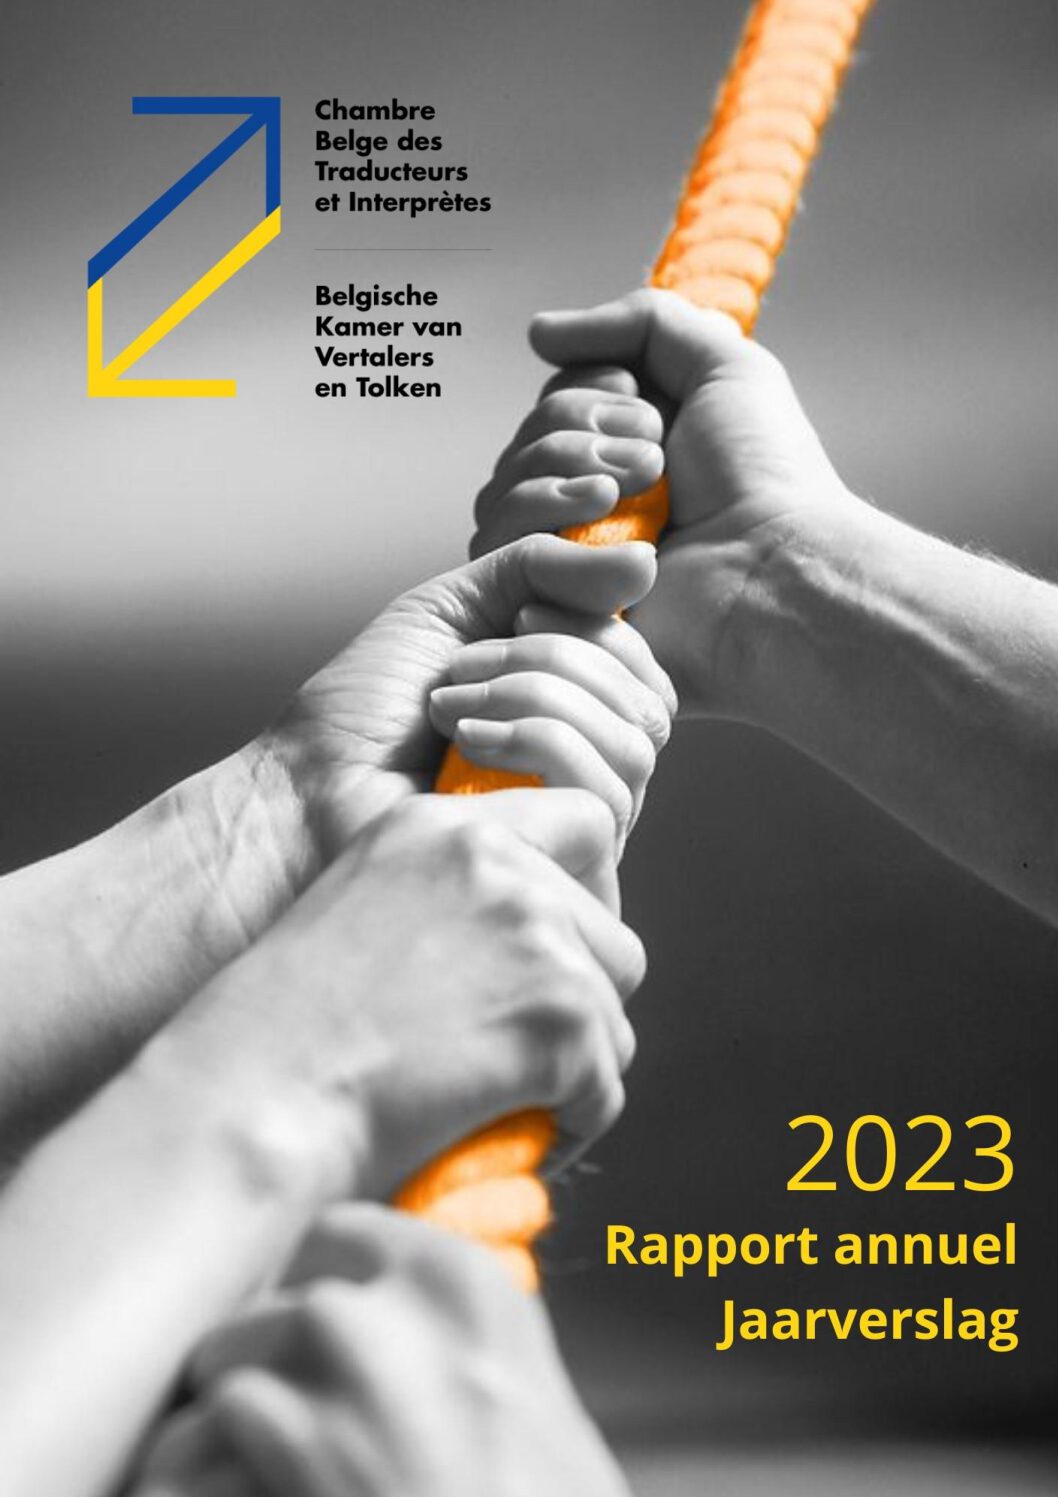 Image de présentation pour le document : Rapport annuel CBTI – Jaarverslag BKVT 2023